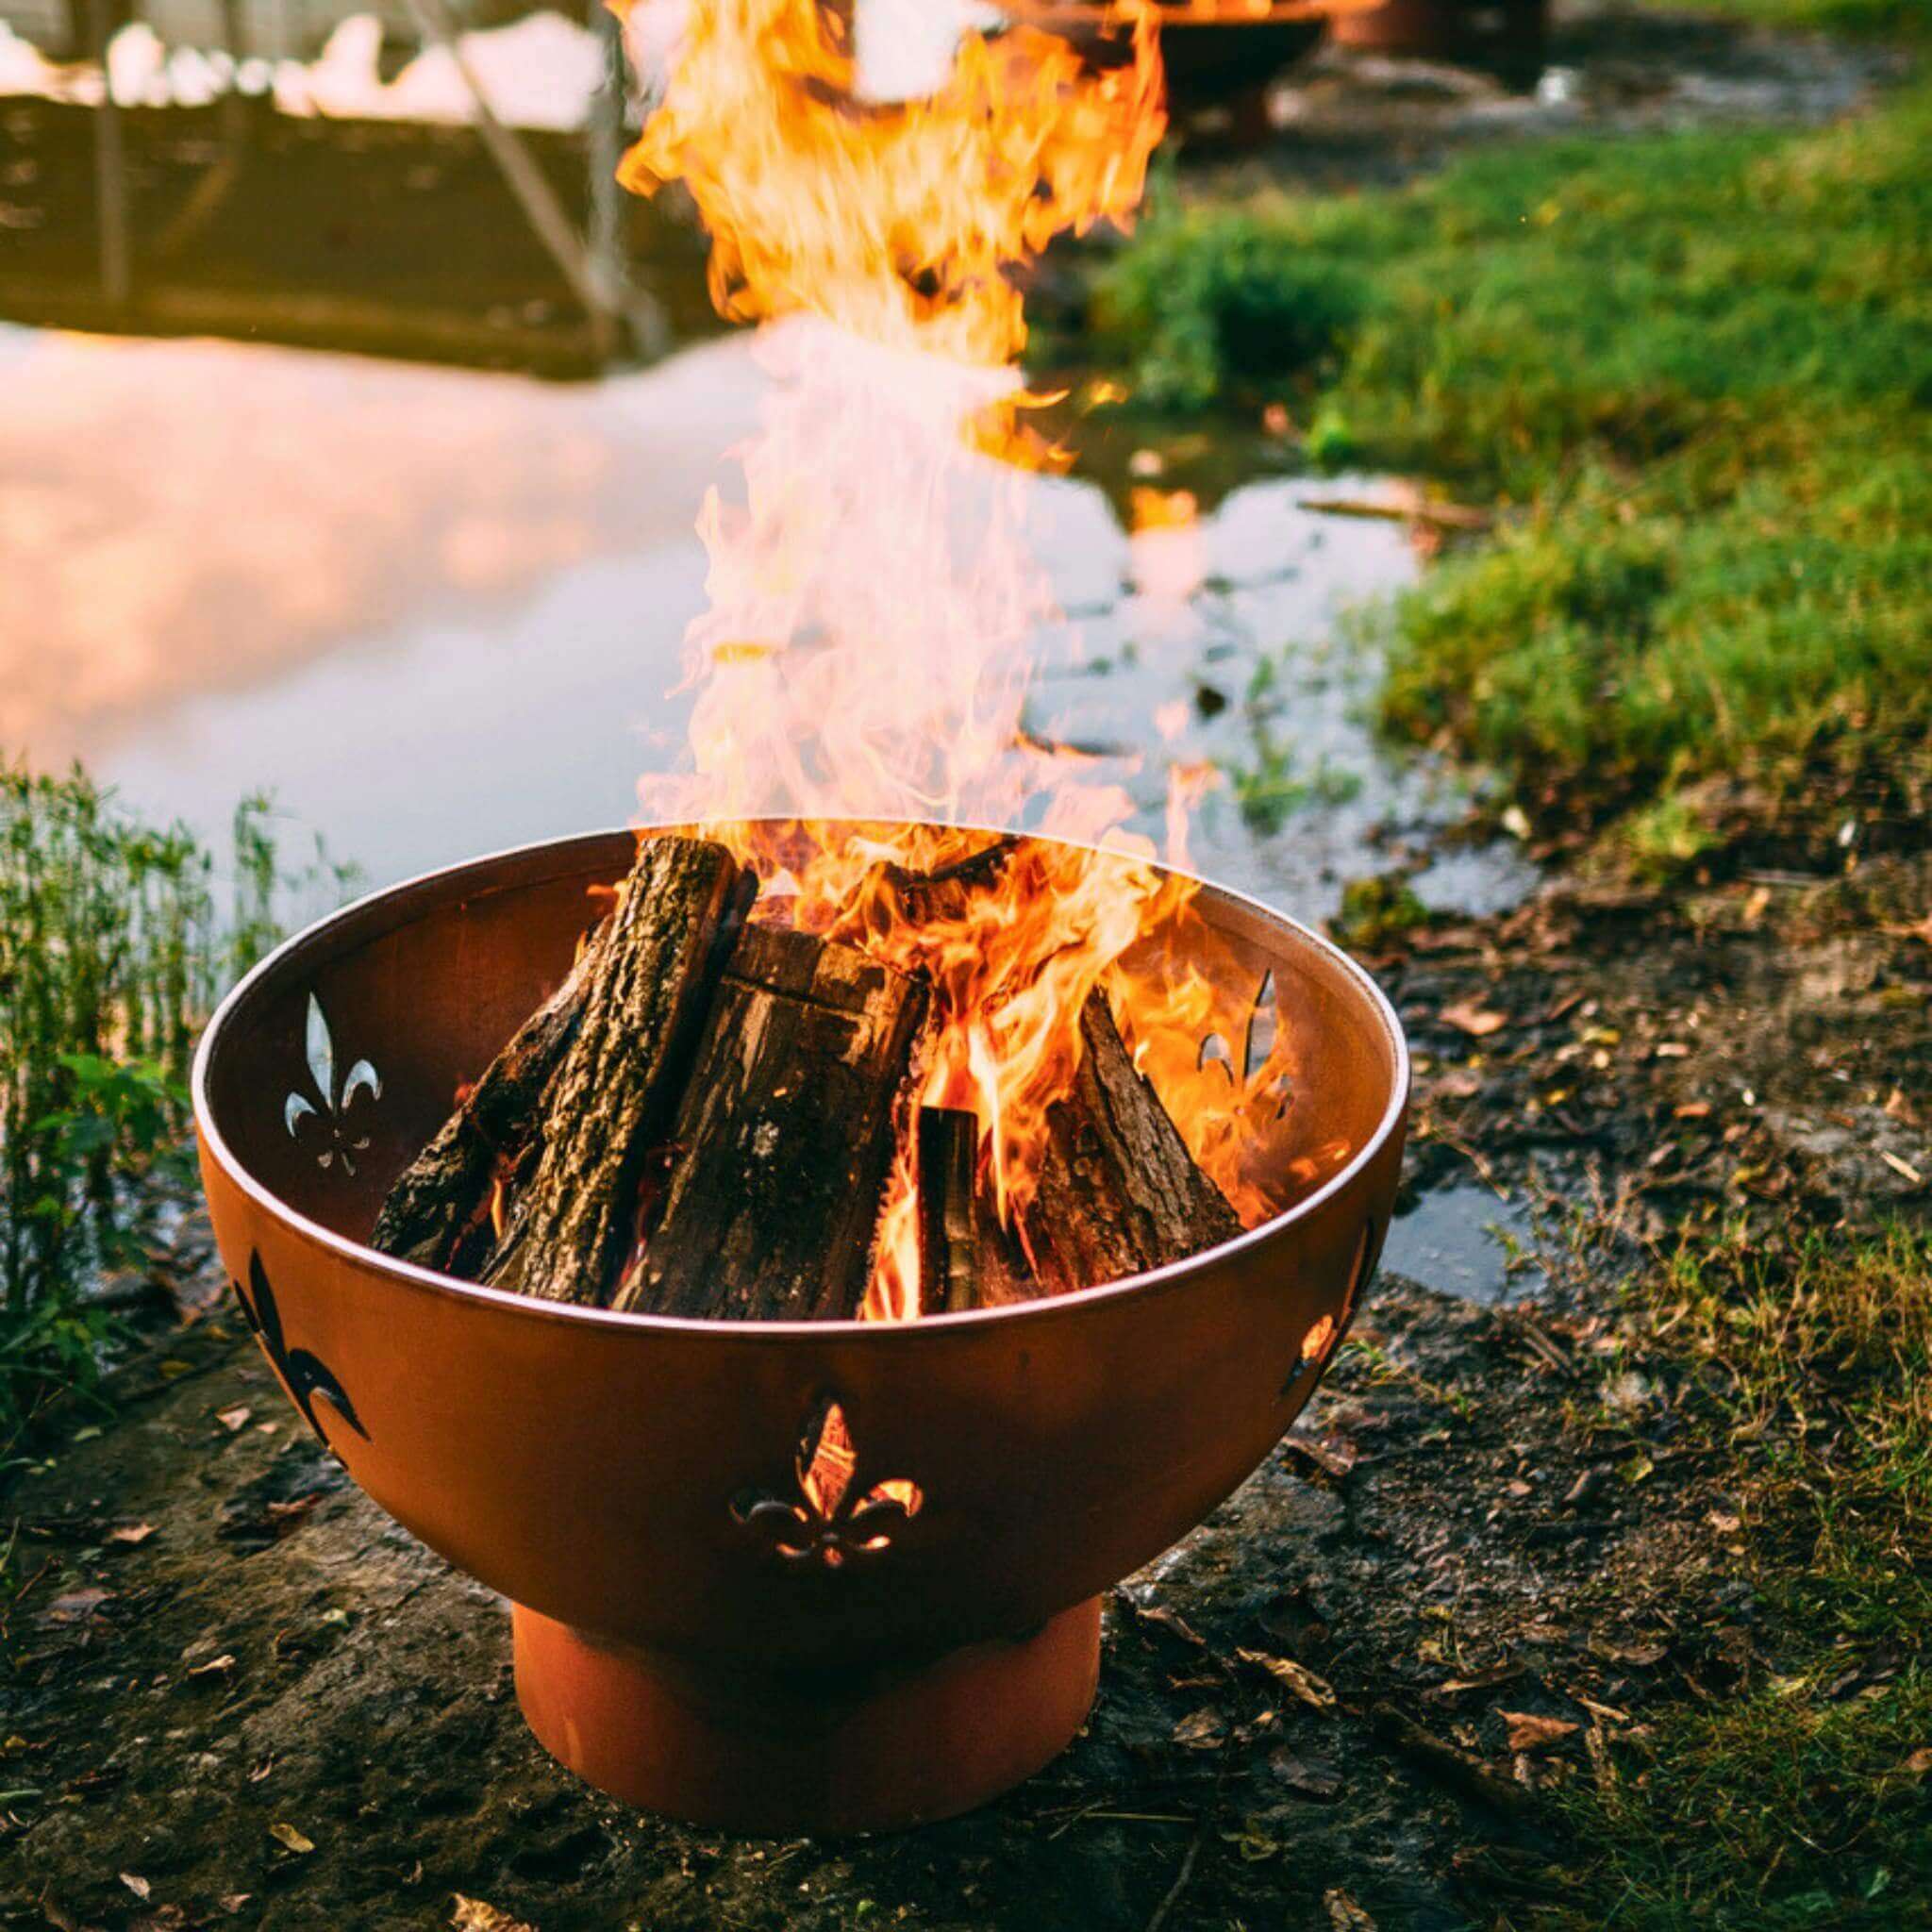 "Fleur de Lis" Wood Burning Fire Pit in Steel - Fire Pit Art